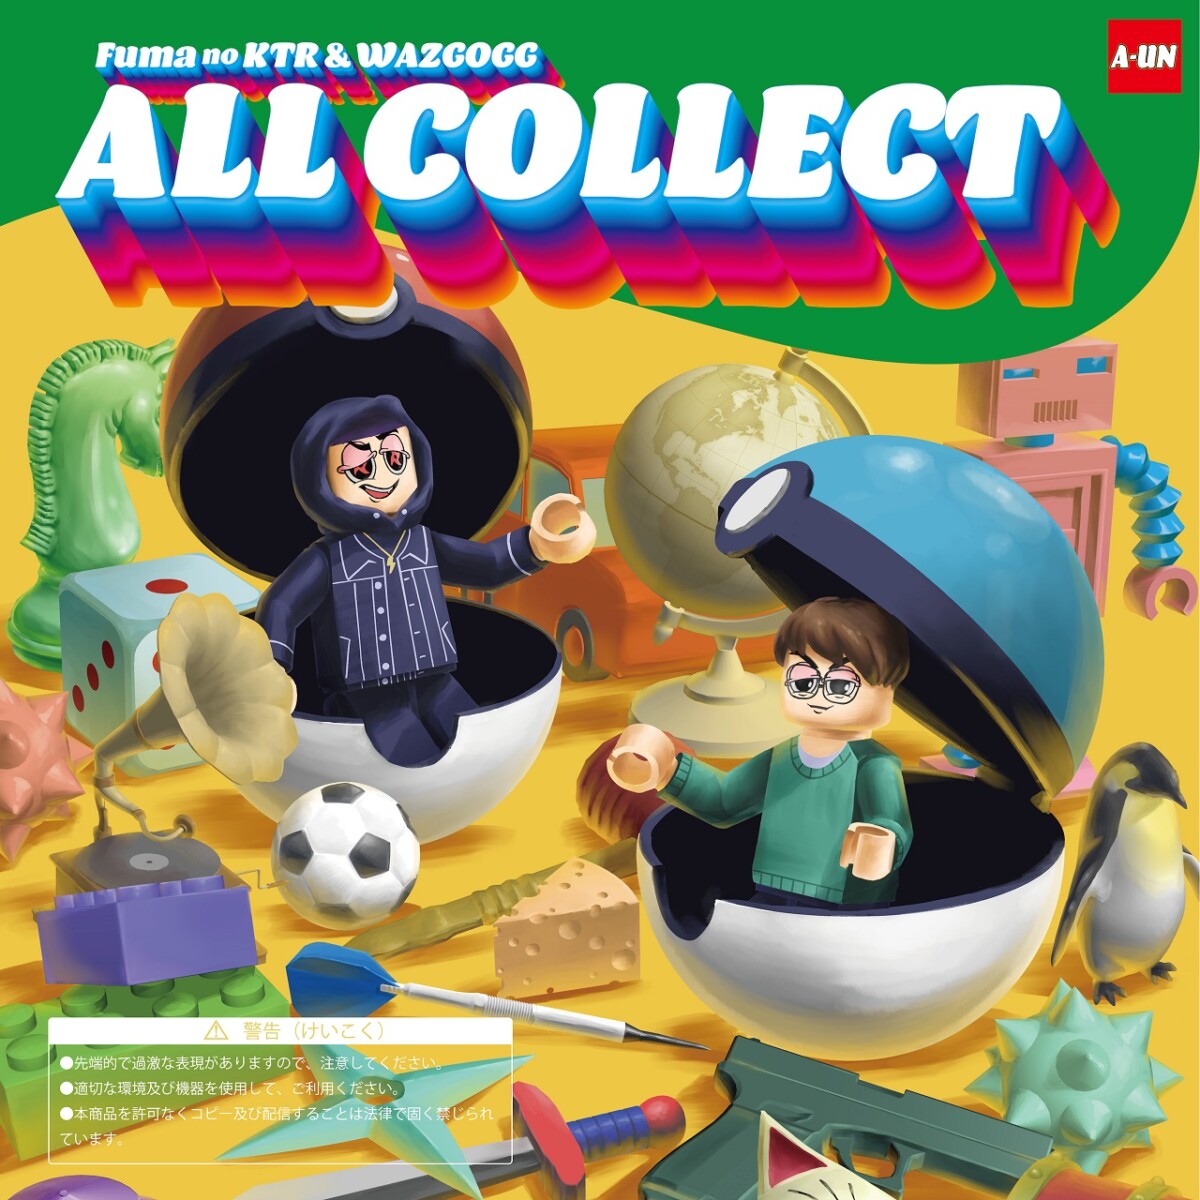 Fuma no KTRとWAZGOGGによるジョイントアルバム『All Collect』が 